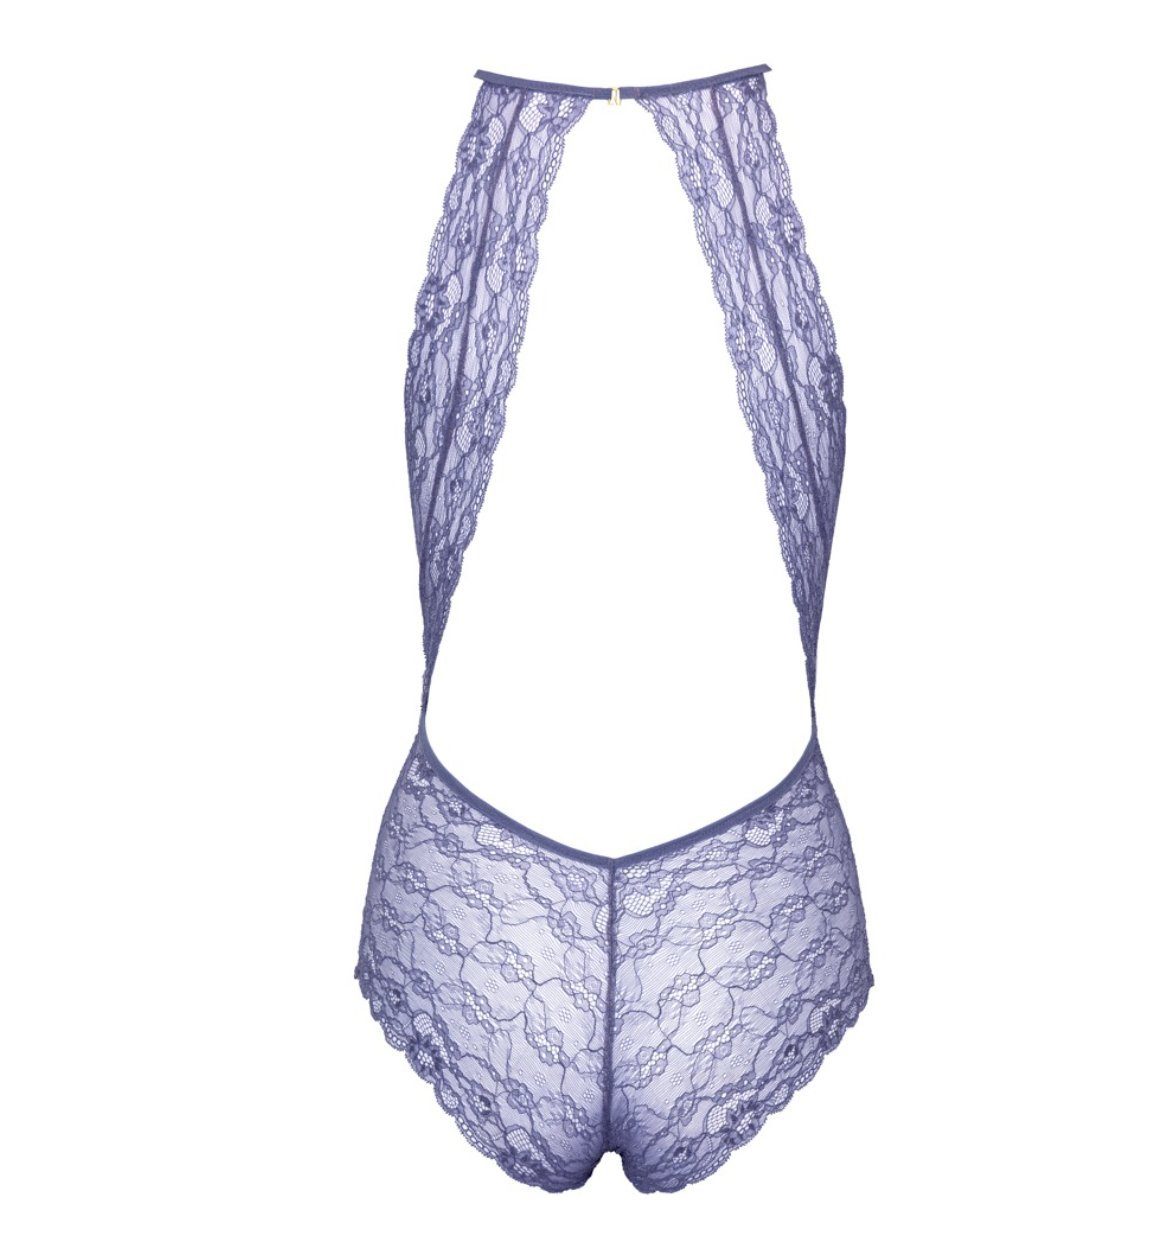 Body Spitze aus bequem, elastisch, komplett feiner figurbetont Lavendelfarbener Kissable Stringbody